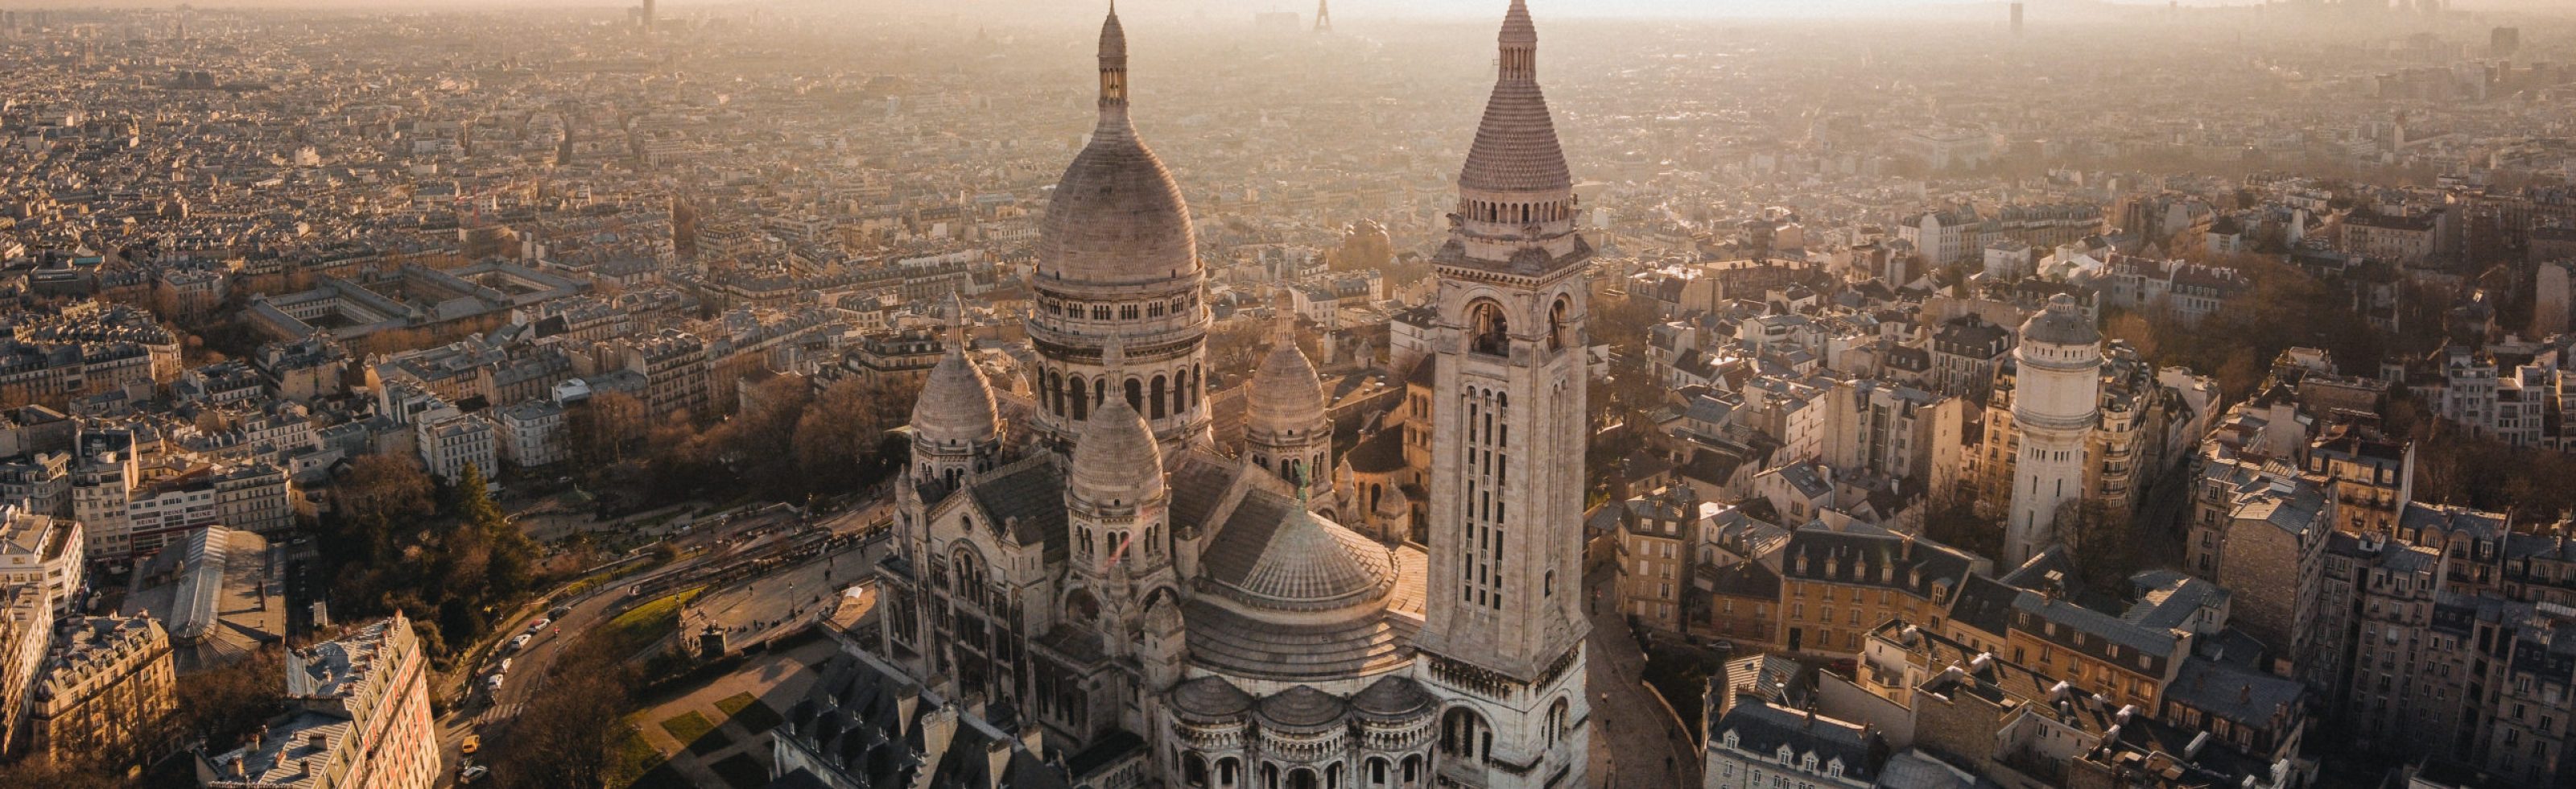 Photographe vidéaste drone Paris